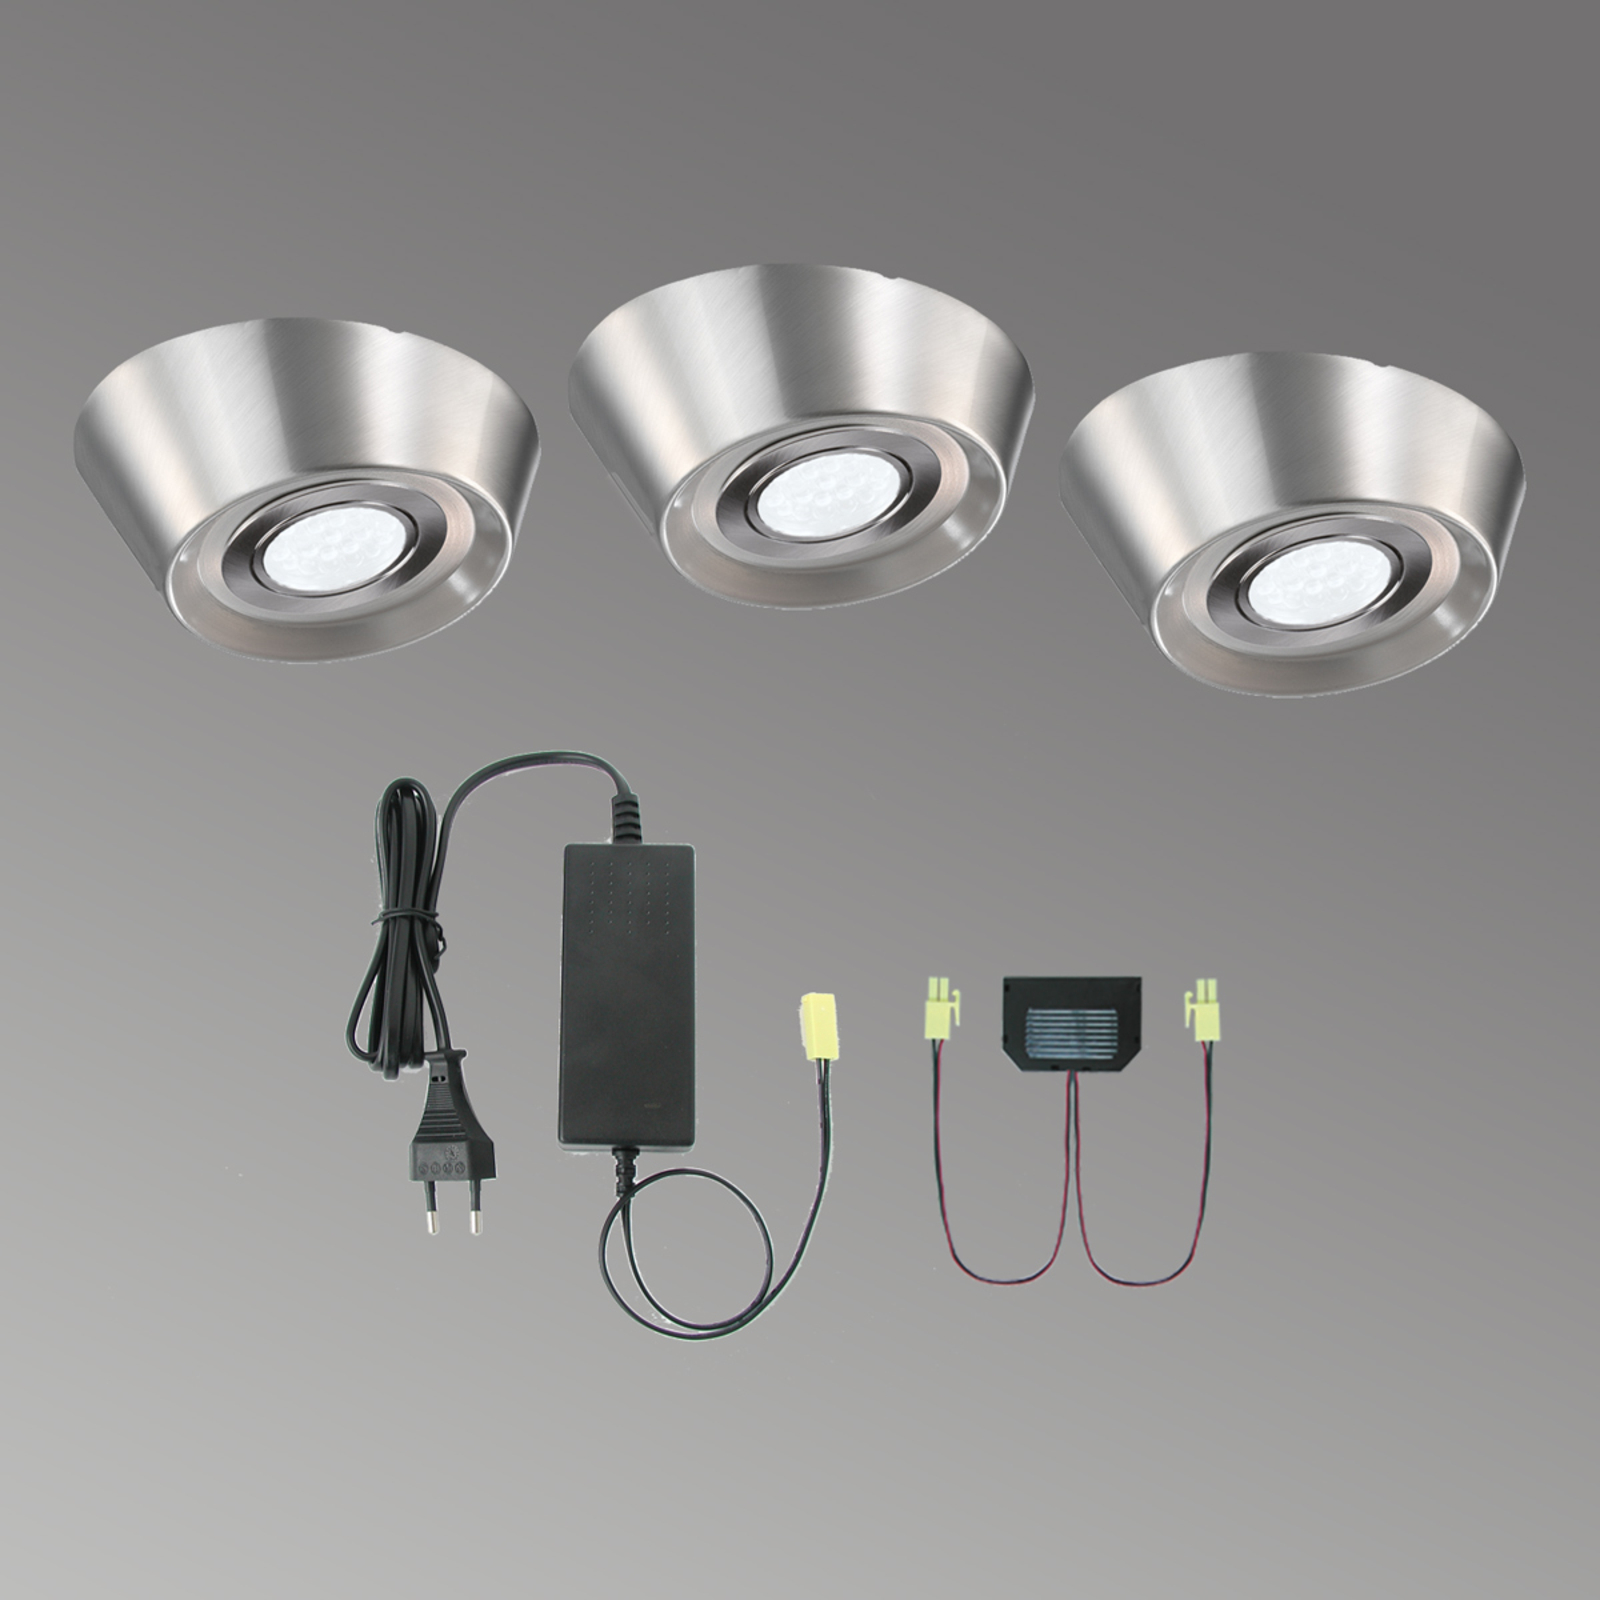 Podhľadové LED svietidlá PAL CF, 3 kusy, Ø 12 cm